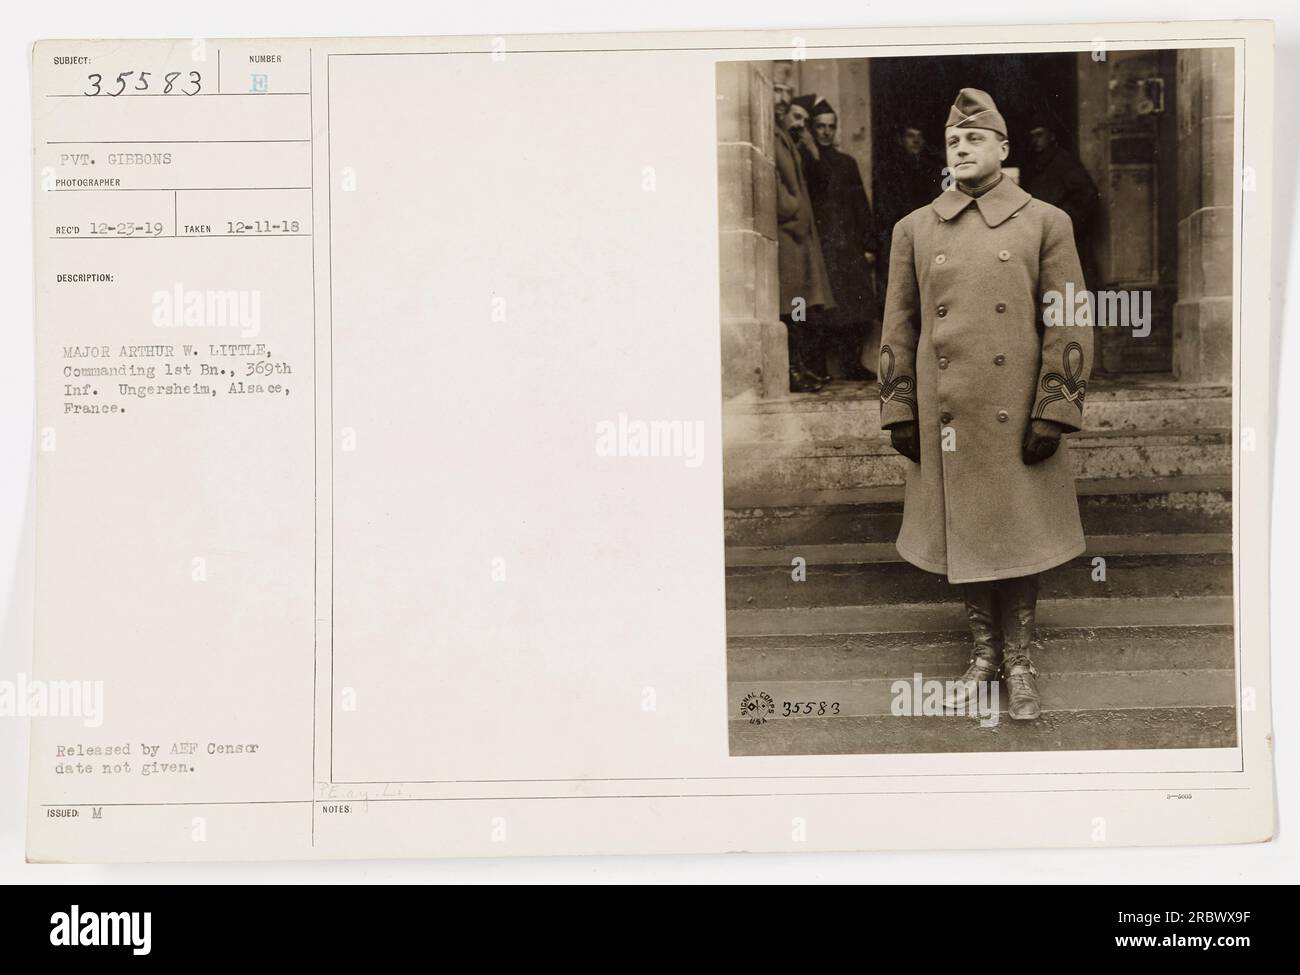 Bild 111-SC-35583 zeigt Major Arthur W. Little, den kommandierenden Offizier des 1. Bataillons, 369. Infanterie, in Ungersheim, Elsass, Frankreich. Das Foto wurde von Pvt. Gibbons am 11. Dezember 1918 aufgenommen und am 23. Dezember 1919 erhalten. Das Bild wurde vom AEF-Sensor veröffentlicht, obwohl das Veröffentlichungsdatum unbekannt ist. Die angegebene Beschreibung stammt aus Hinweisen, die dem Bild beiliegen.“ Stockfoto